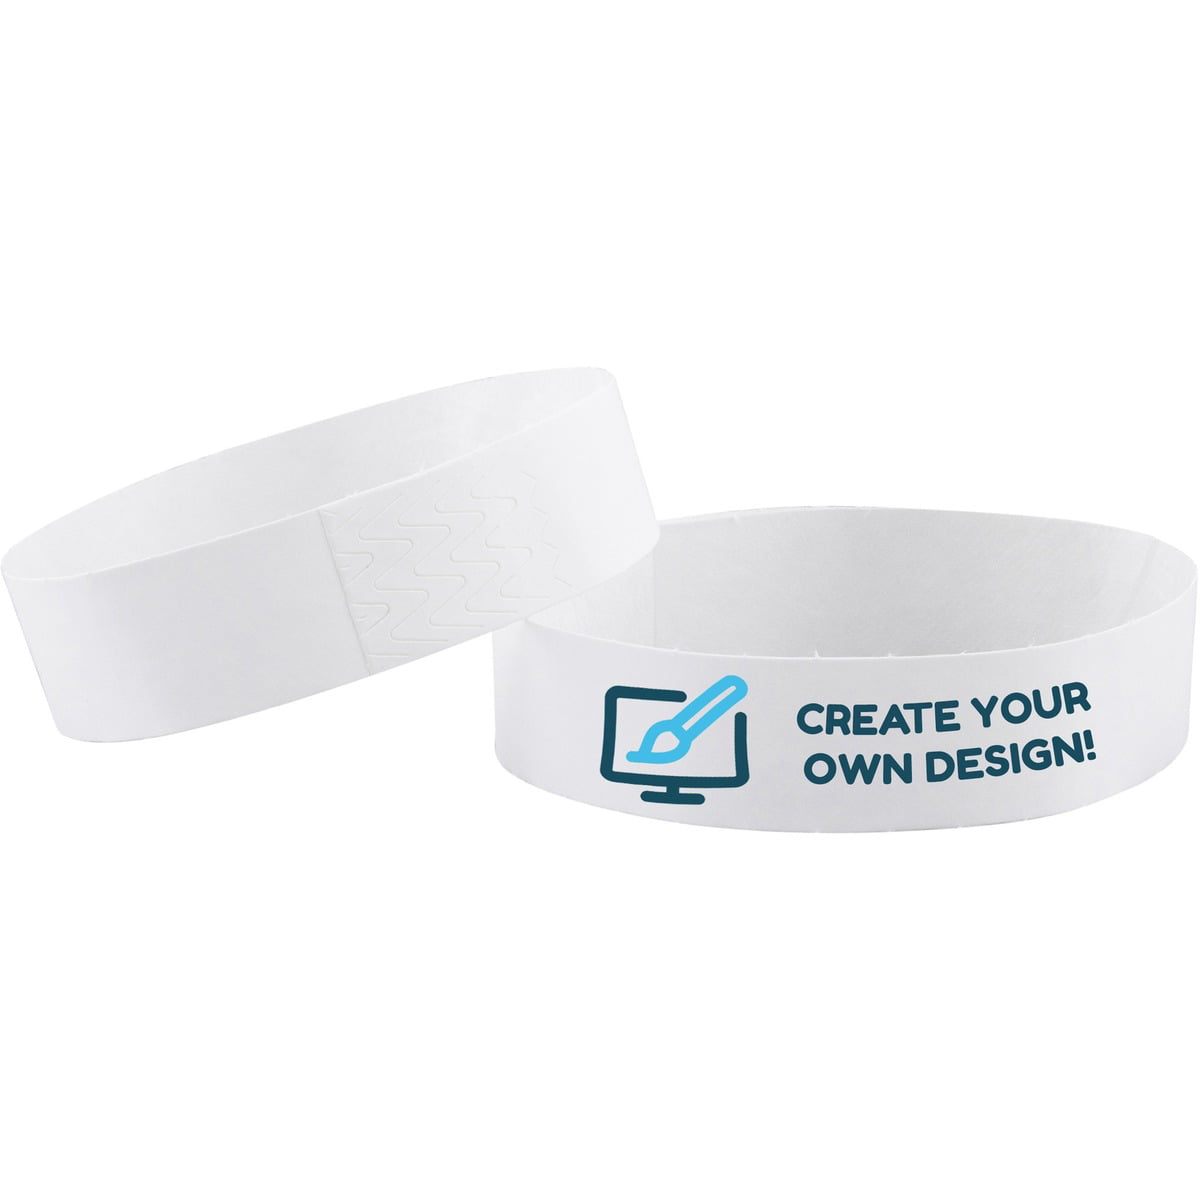 WristCo Neon Blue 3/4 Inch Voucher Detachable Stub 500 Count Paper Wristbands for Events